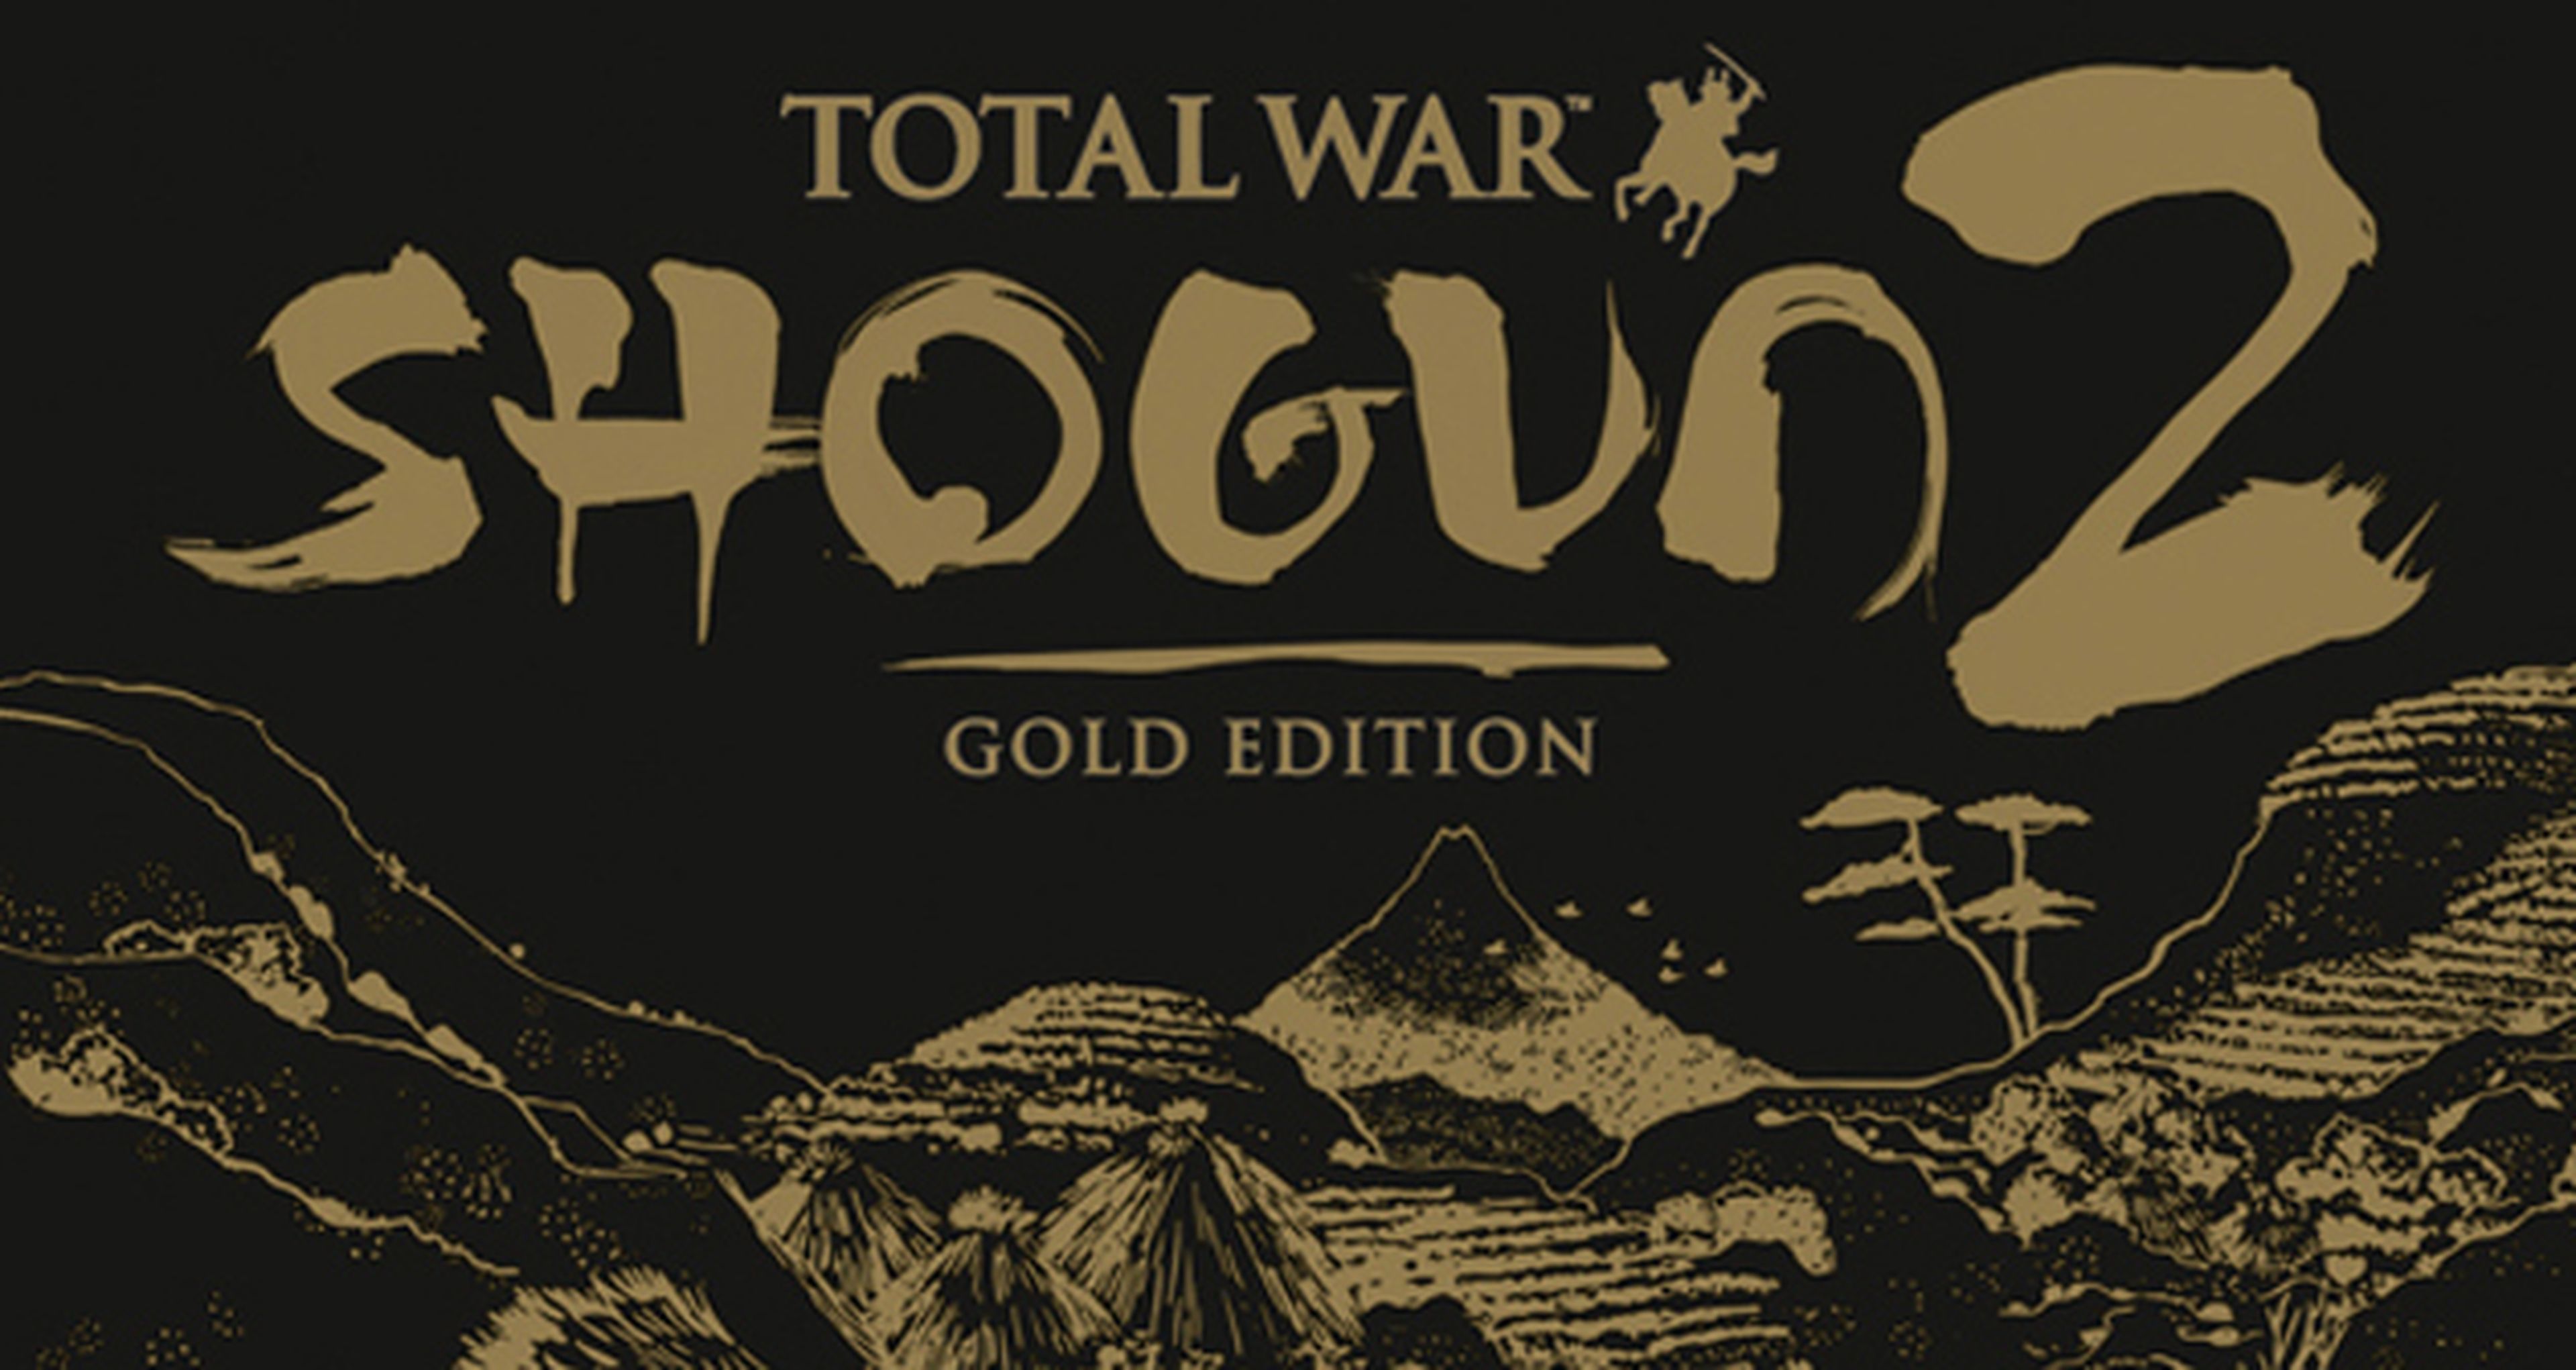 Anunciado Total War Shogun 2 Gold Edition